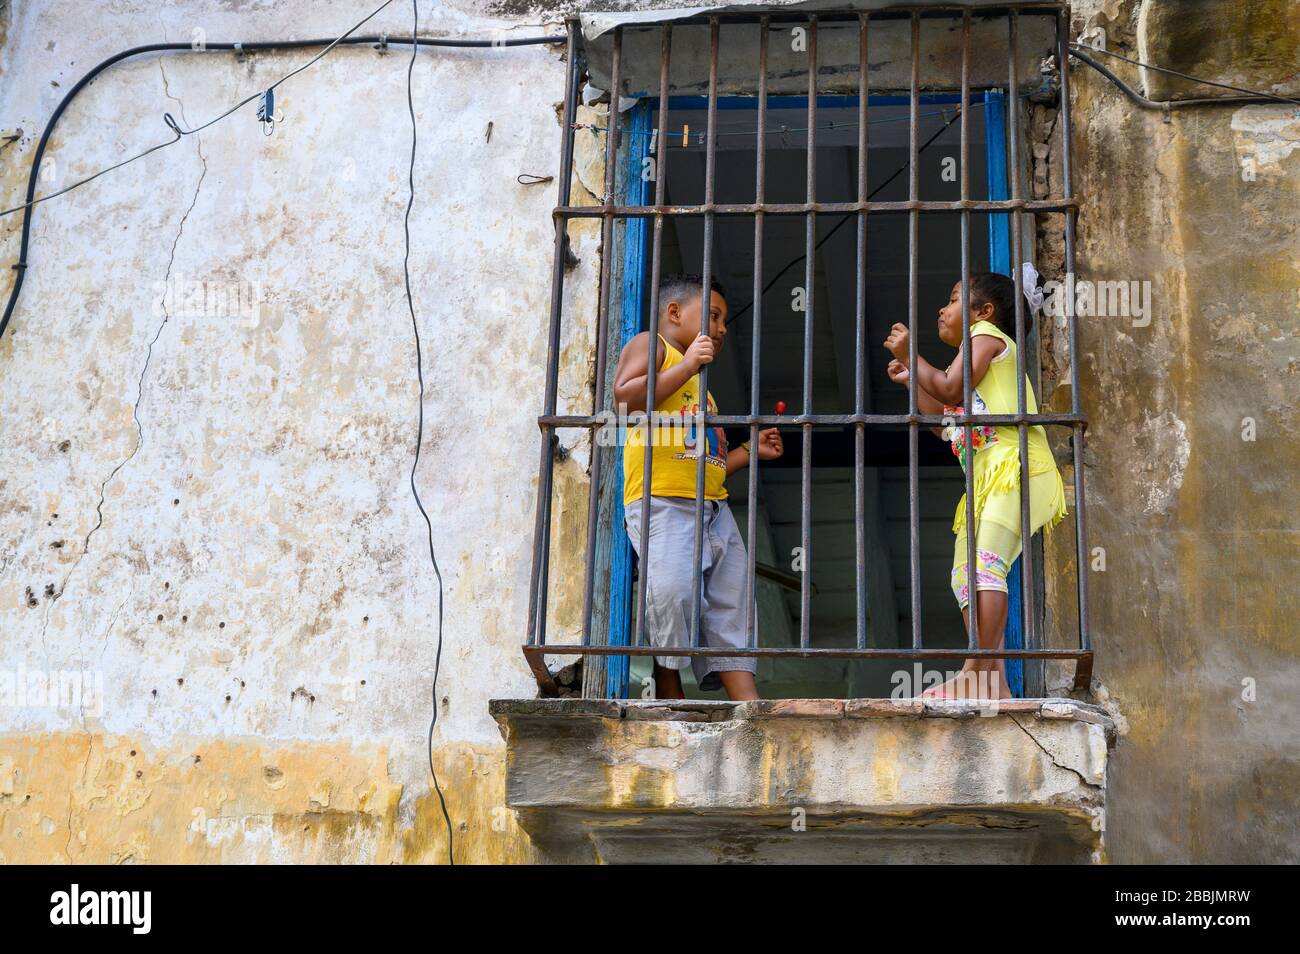 Children behind window bars, Havana, Cuba Stock Photo